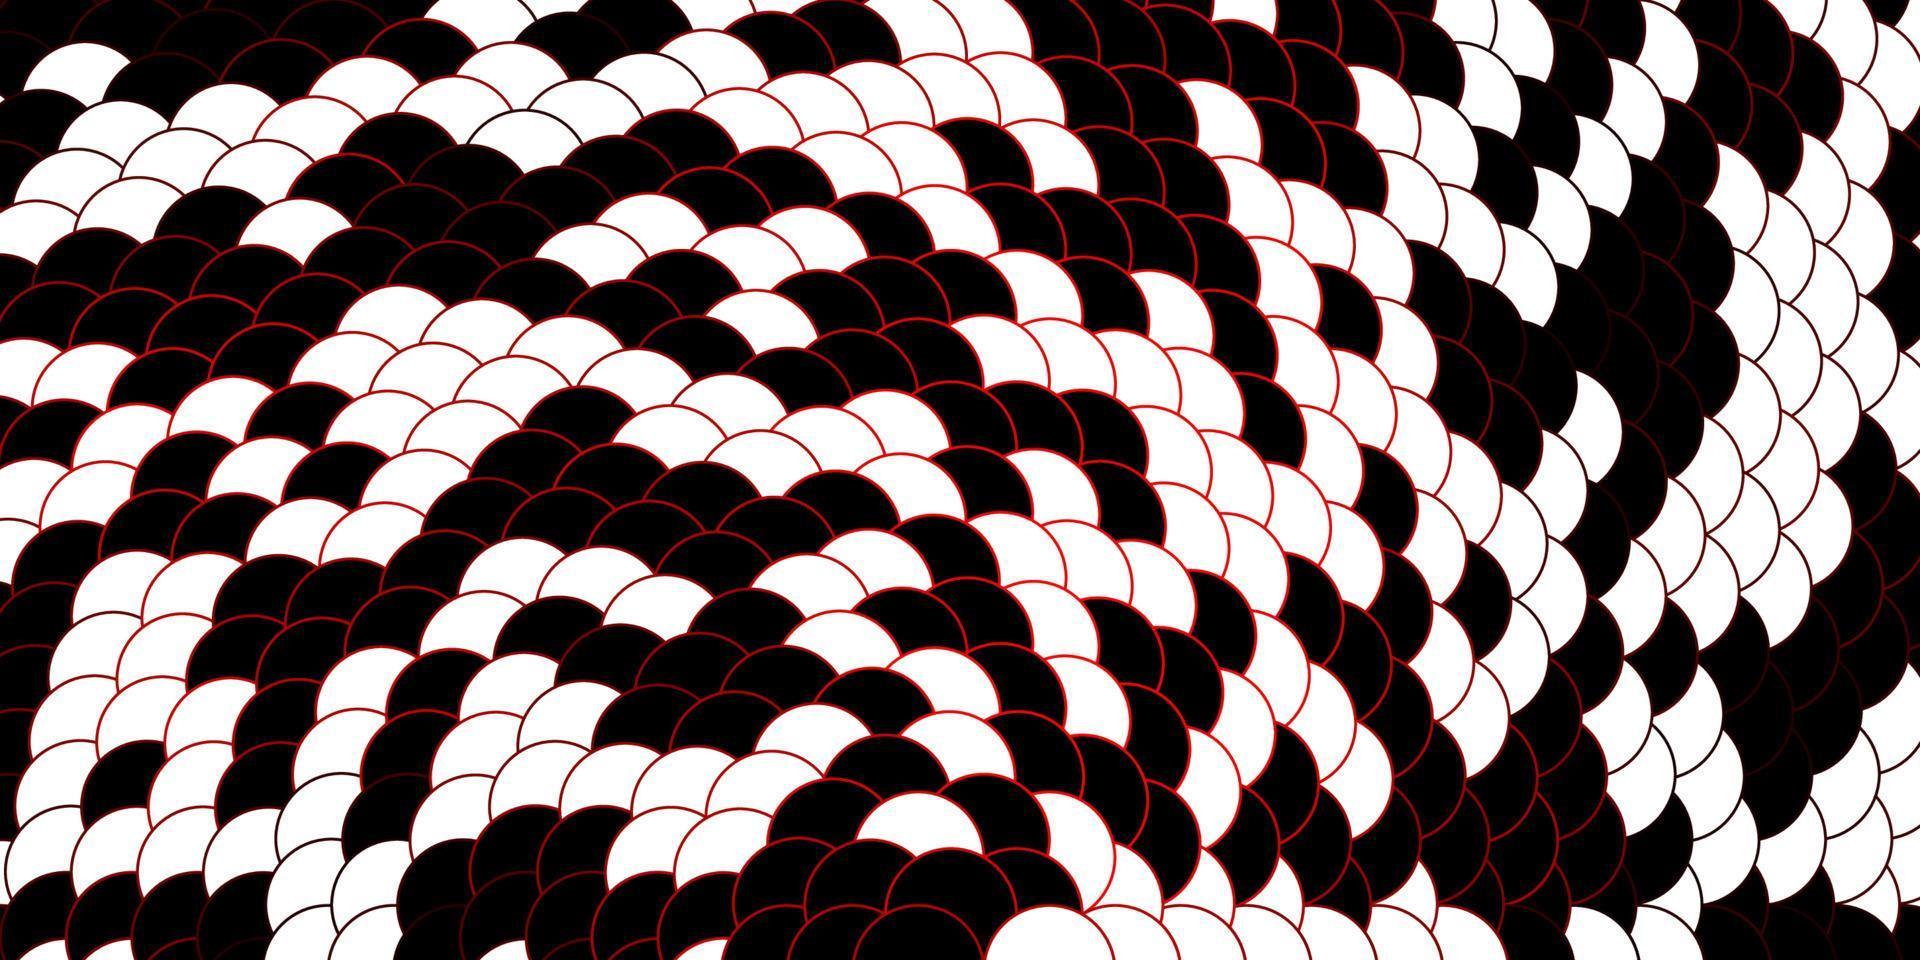 mörk röd vektor bakgrund med cirklar.